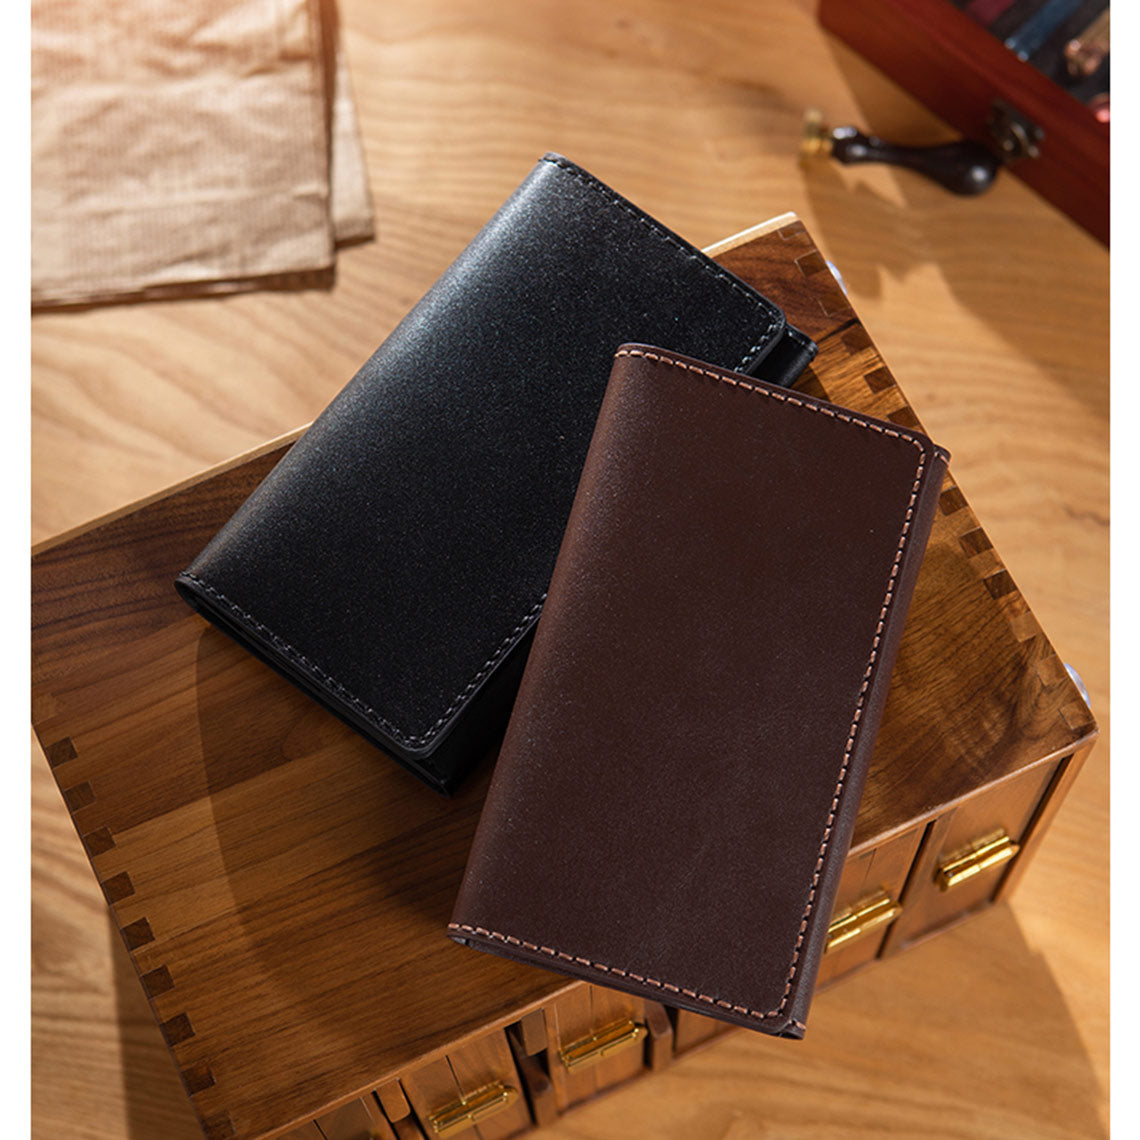 Handmade genuine leather long wallet kit | Black & Brown Slim bifold wallet